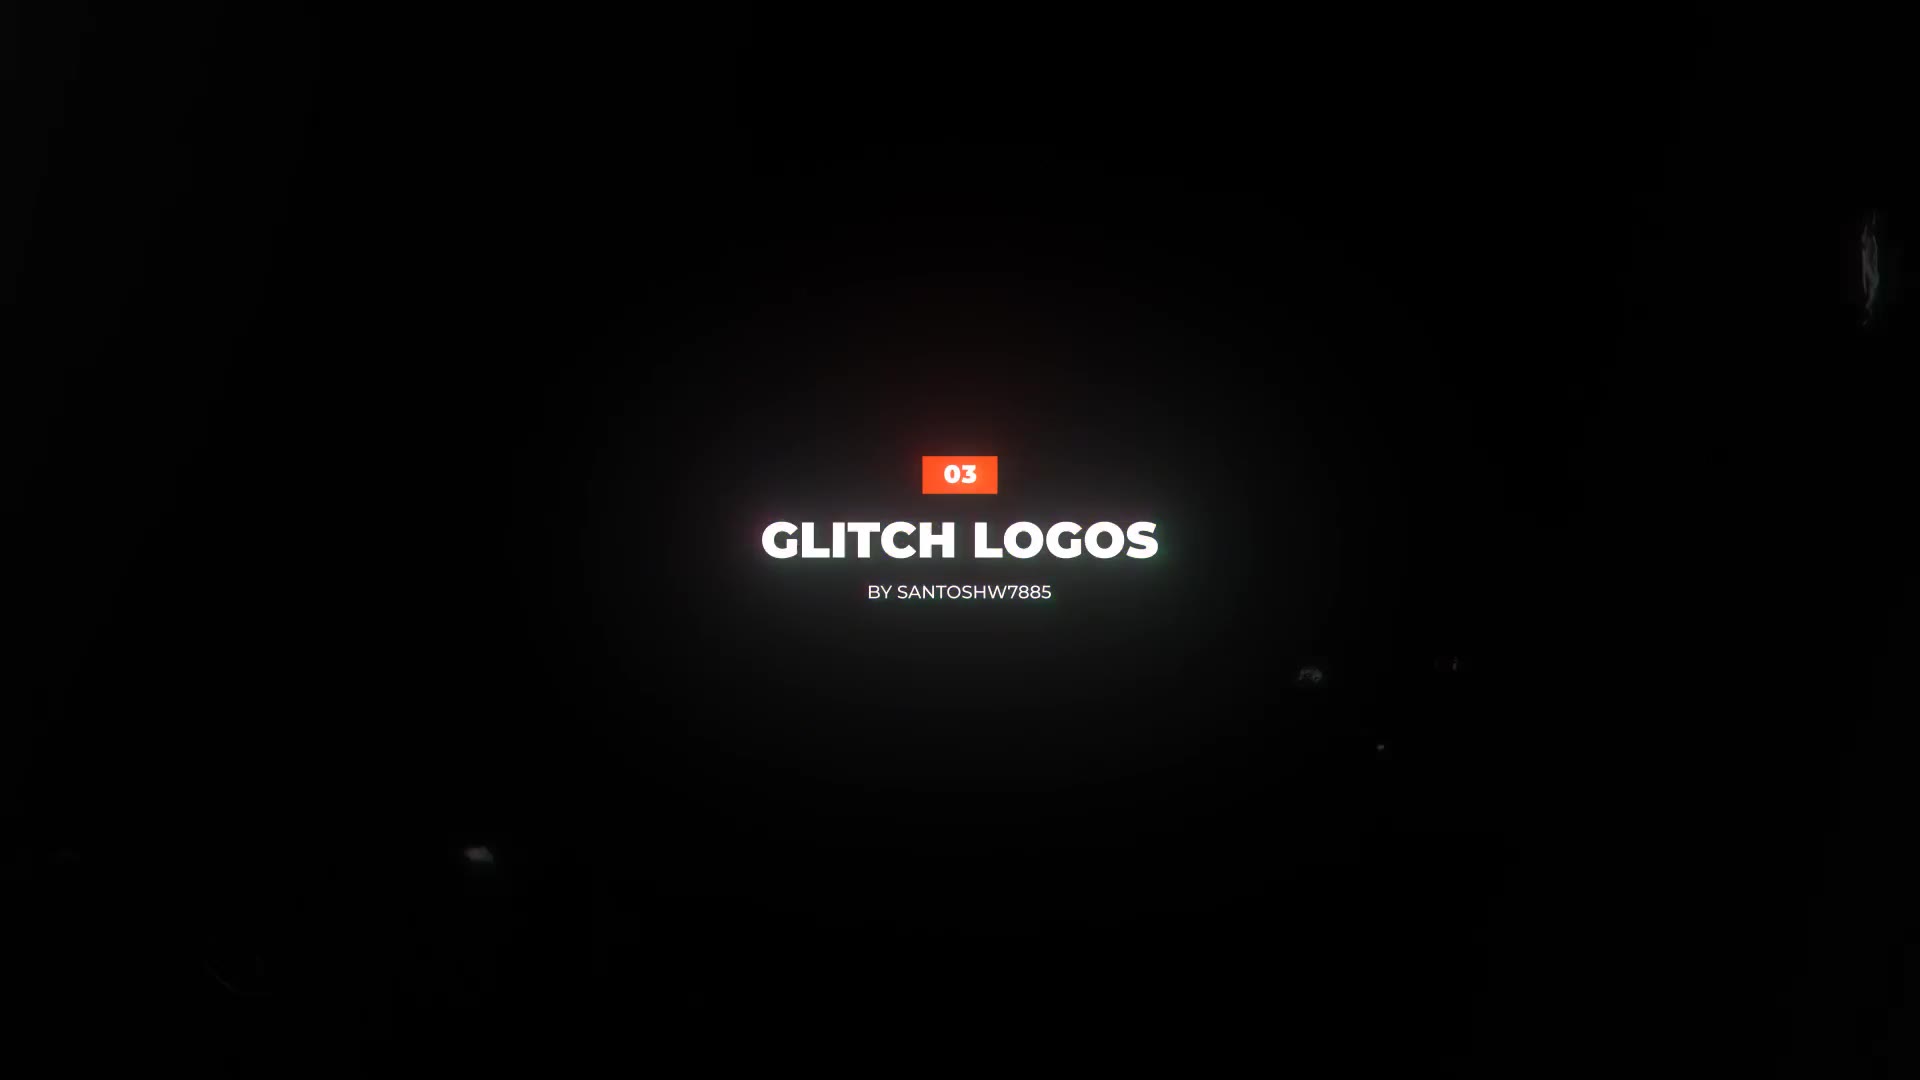 Glitch Logo 3 In 1 Mogrt Videohive 32090668 Premiere Pro Image 2